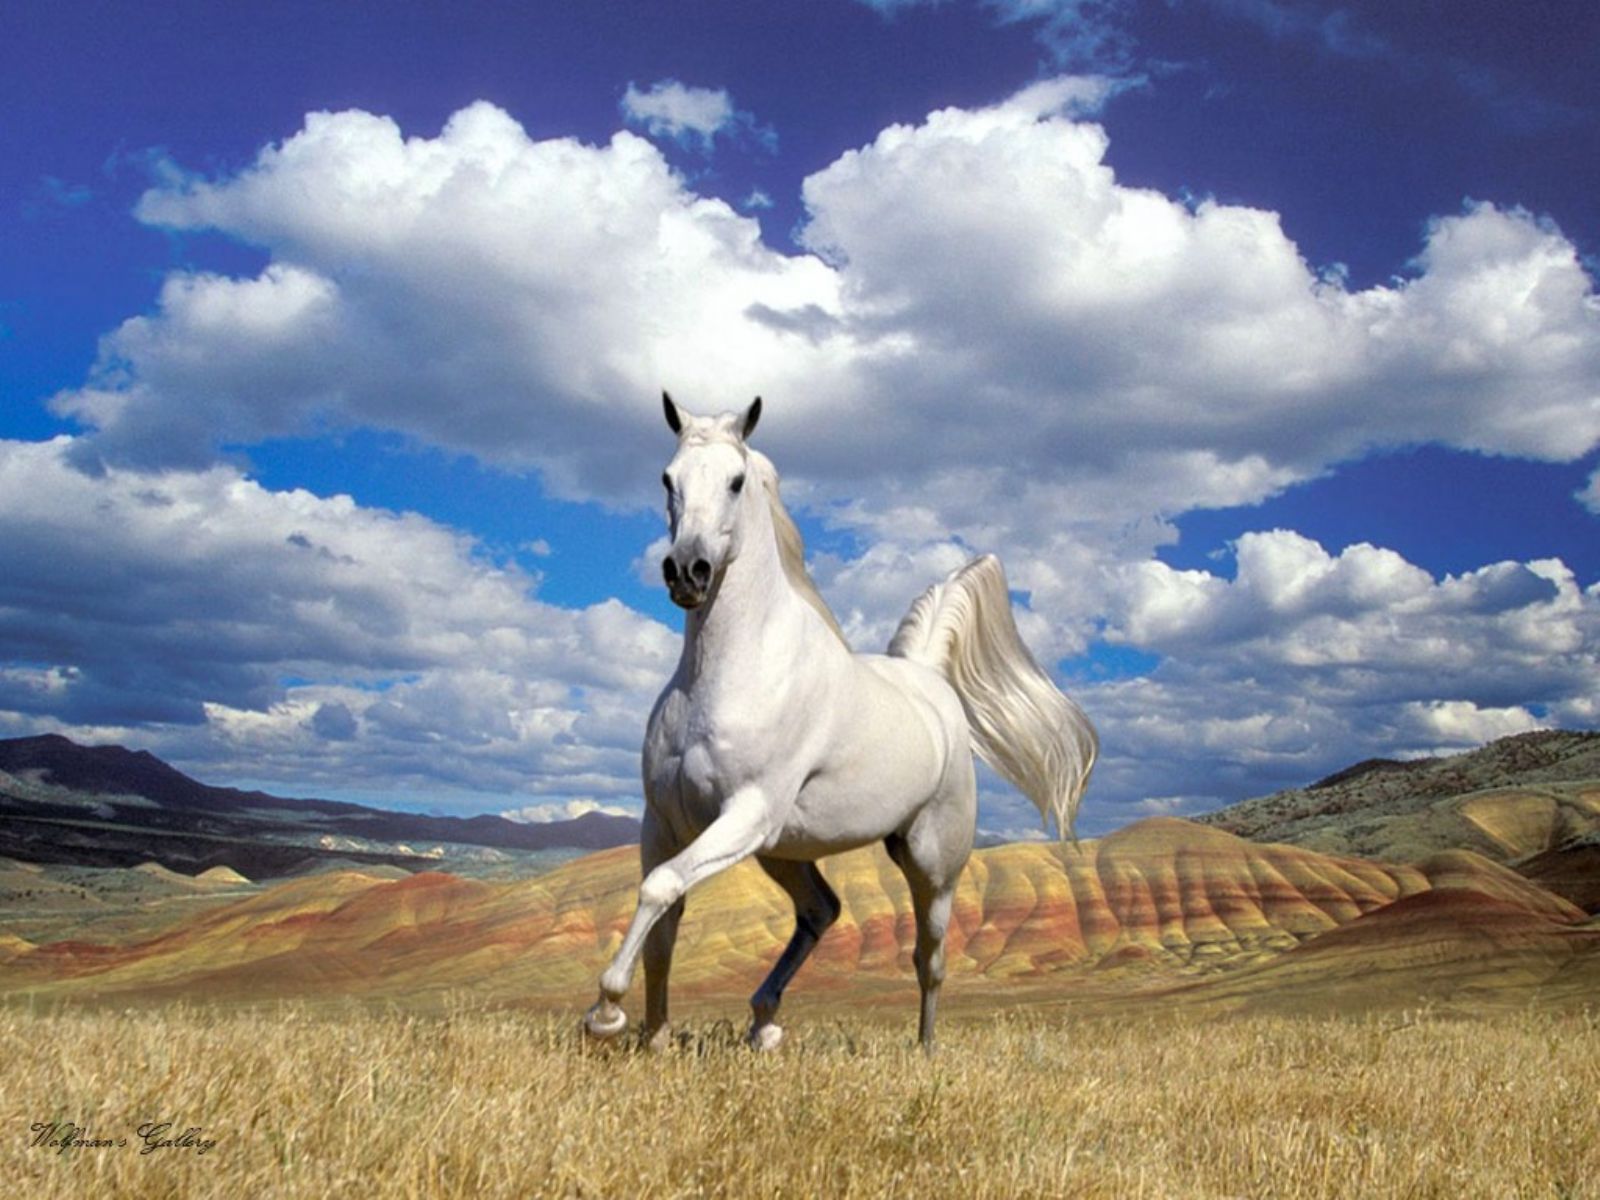 46+] Horse Wallpaper Free Download - WallpaperSafari